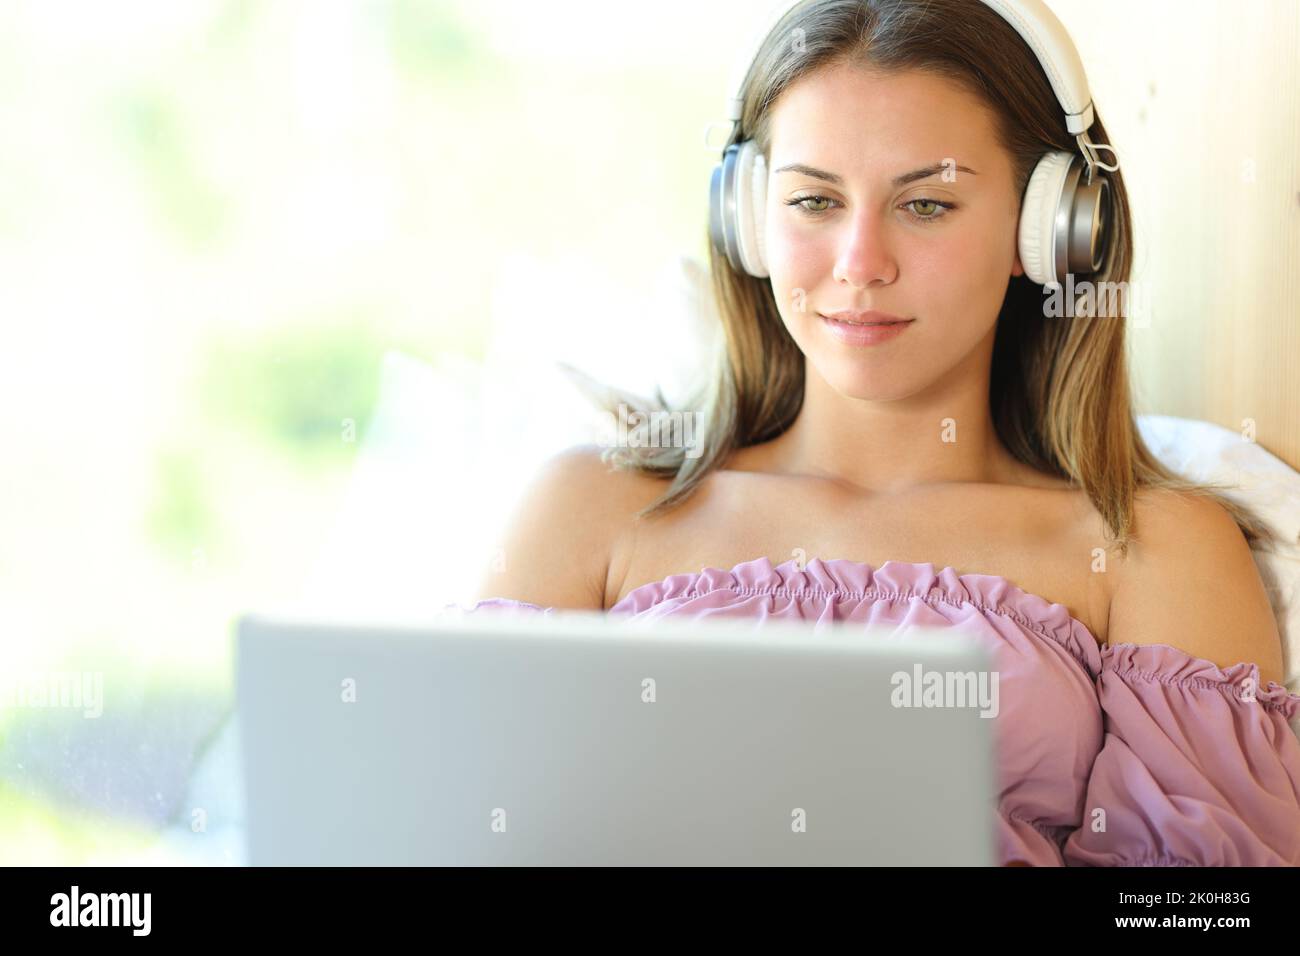 Immagine frontale di una giovane donna che guarda i contenuti multimediali sul notebook a casa Foto Stock